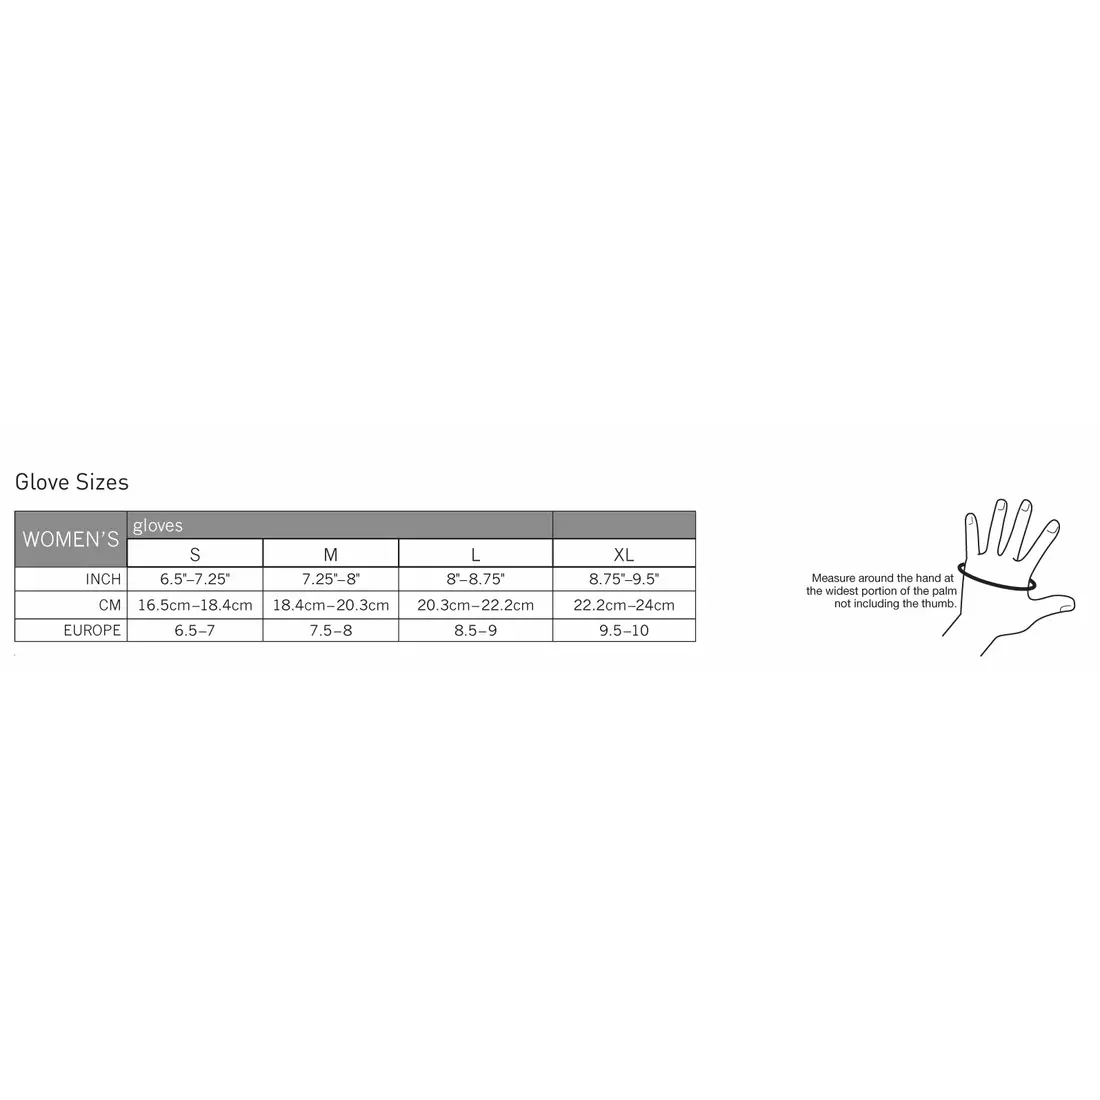 PEARL IZUMI W's Select Softshell 14241405-428 - dámské zimní sportovní rukavice